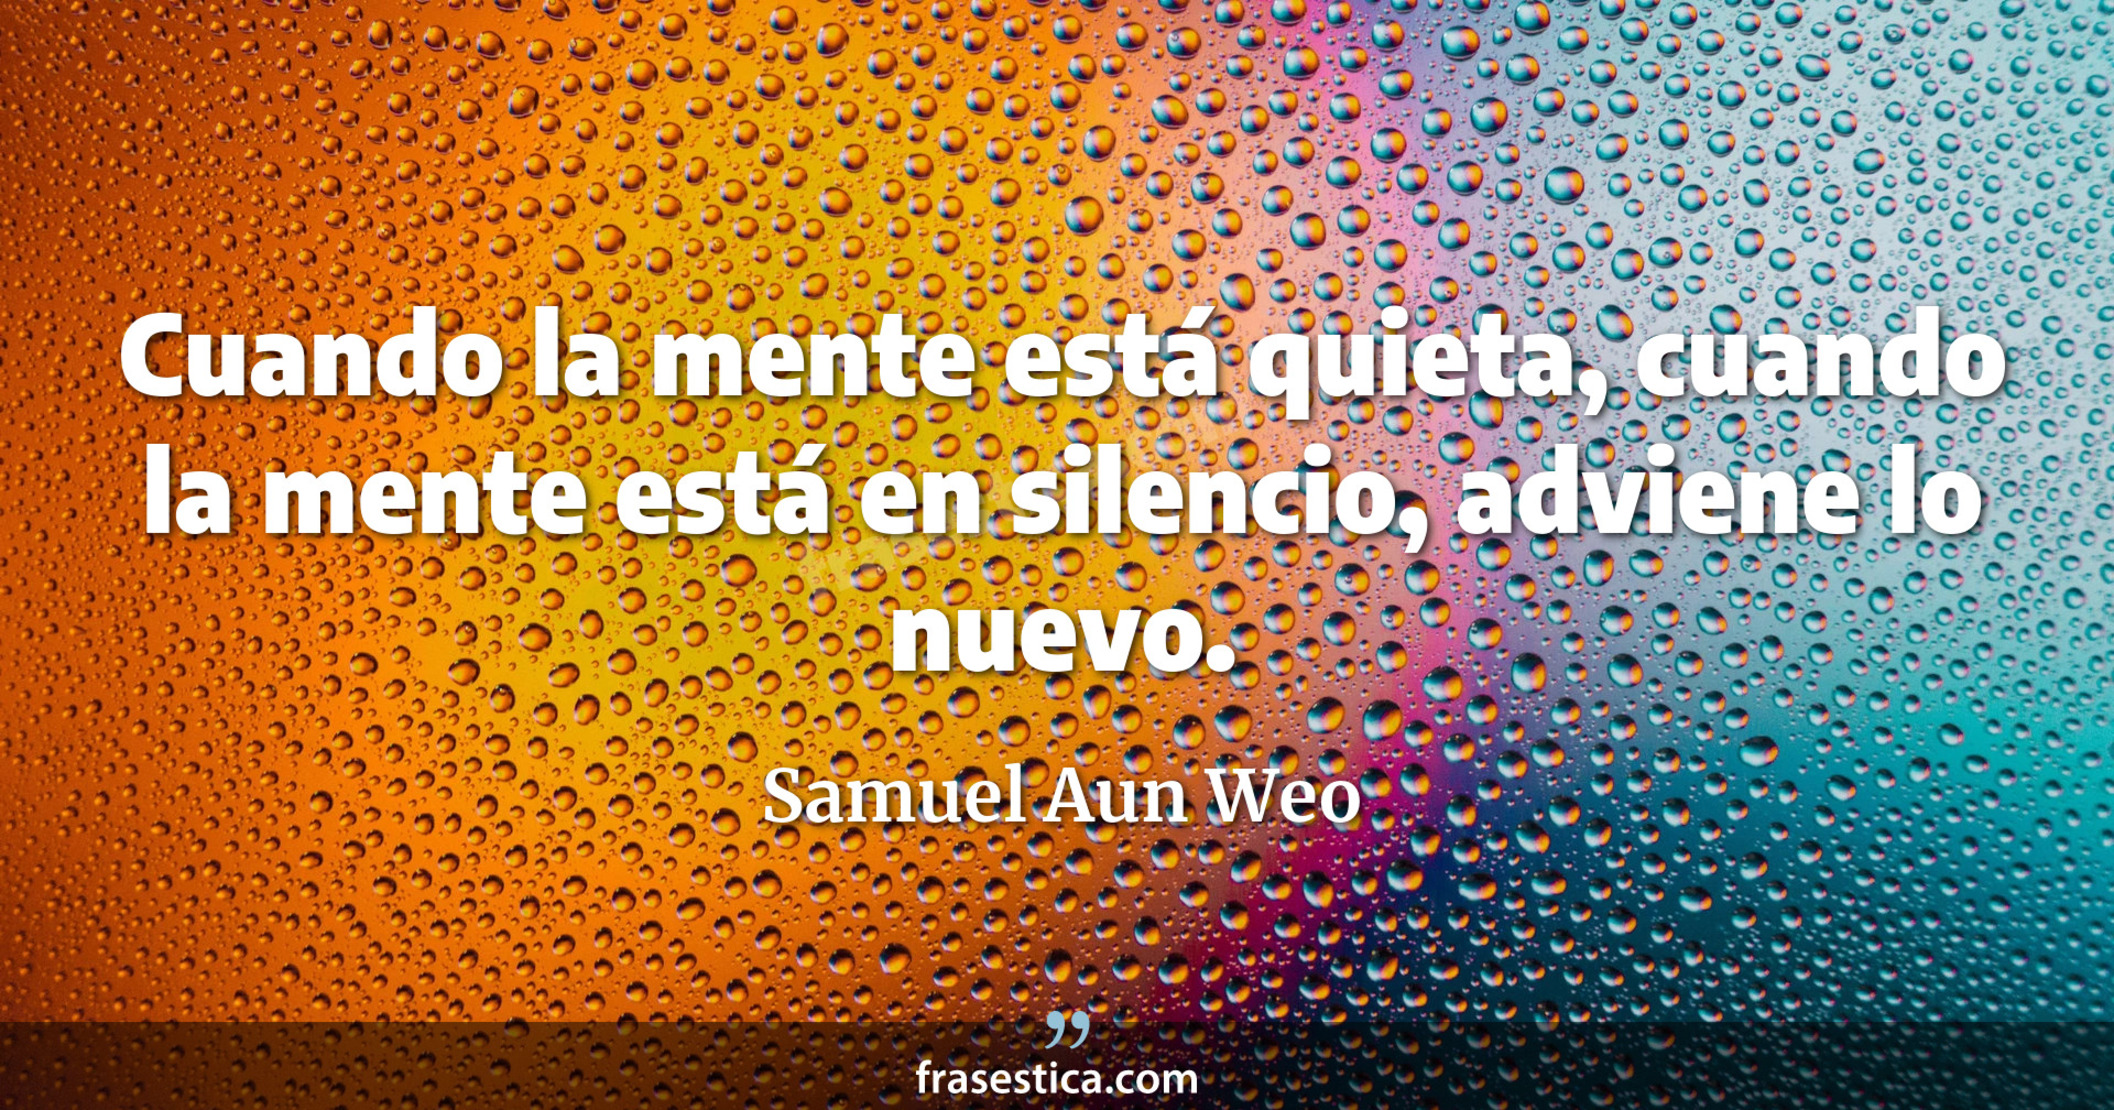 Cuando la mente está quieta, cuando la mente está en silencio, adviene lo nuevo. - Samuel Aun Weo